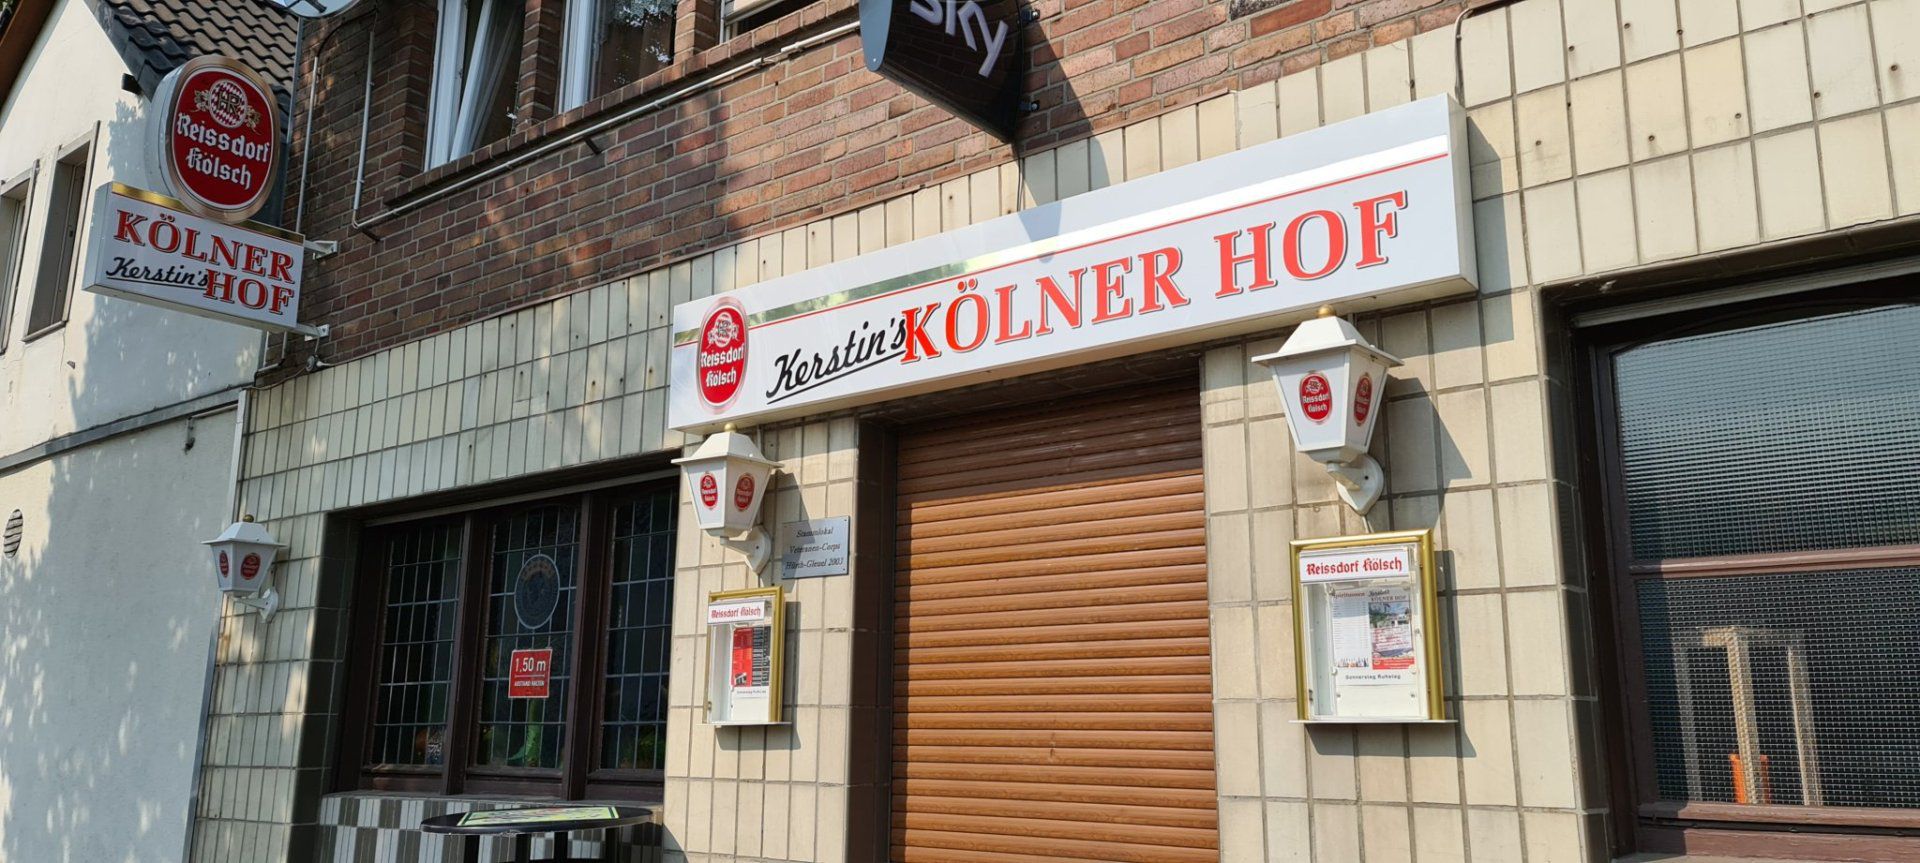 (c) Kerstins-kölner-hof.de